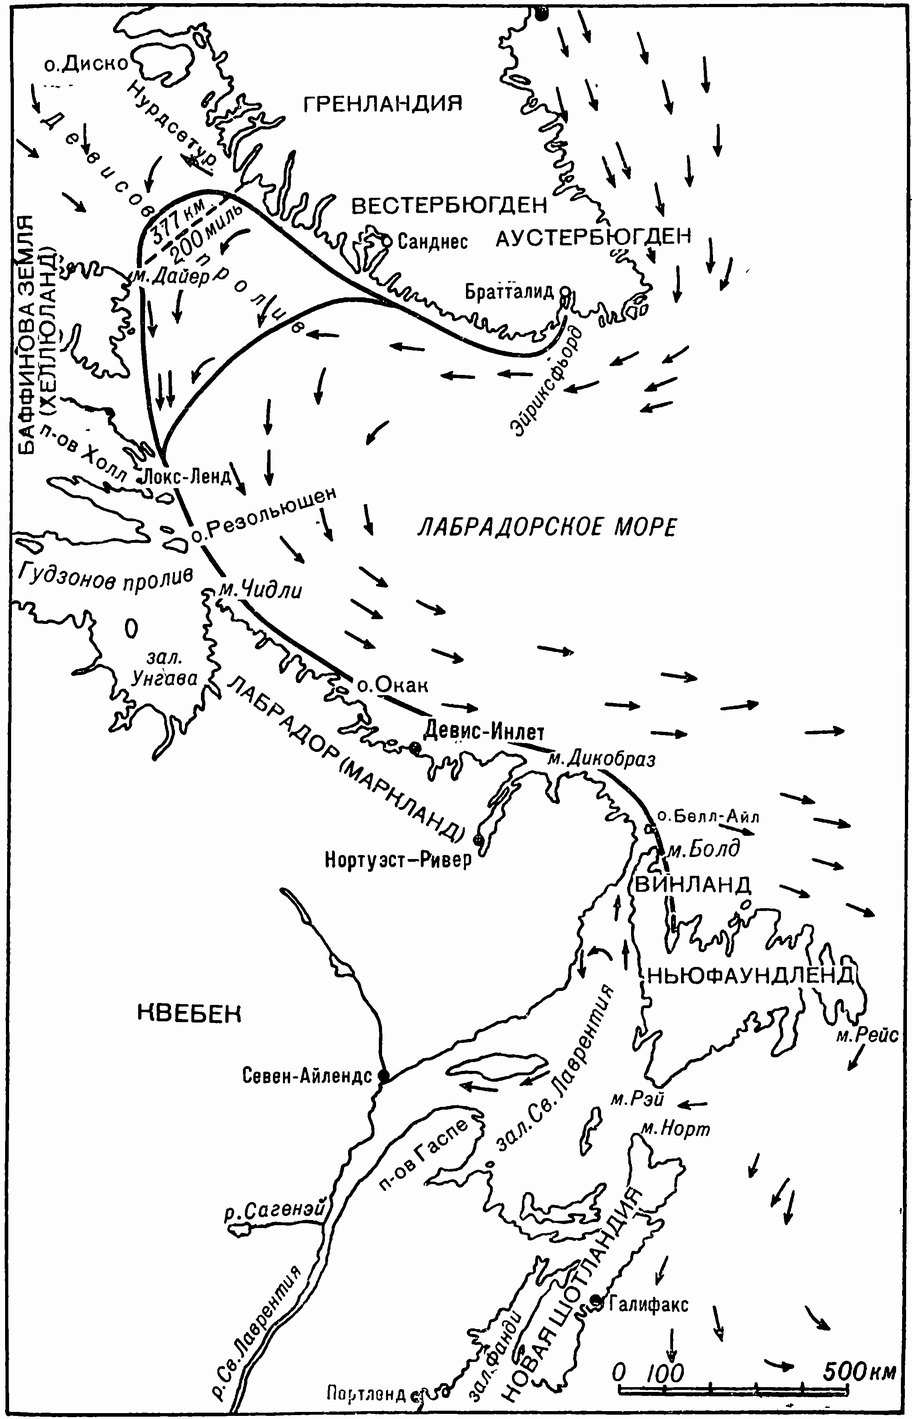 Предполагаемый маршрут (сплошная линия), которым Лейв Эйрикссон и другие винландцы ходили из норманнских поселении Гренландии в Винланд